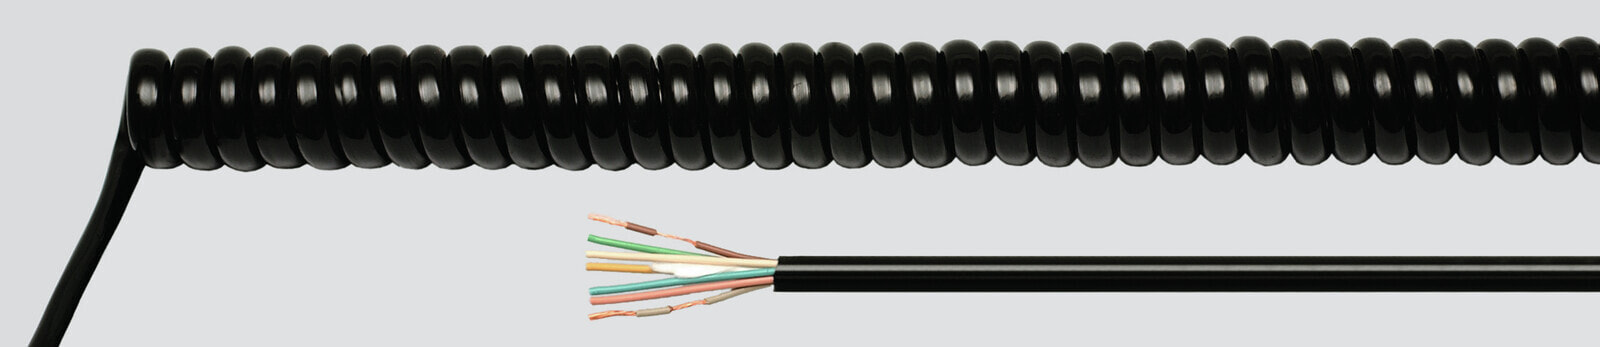 Helukabel 86367 - Low voltage cable - Black - Cooper - 1 mm² - 103.7 kg/km - -25 - 70 °C